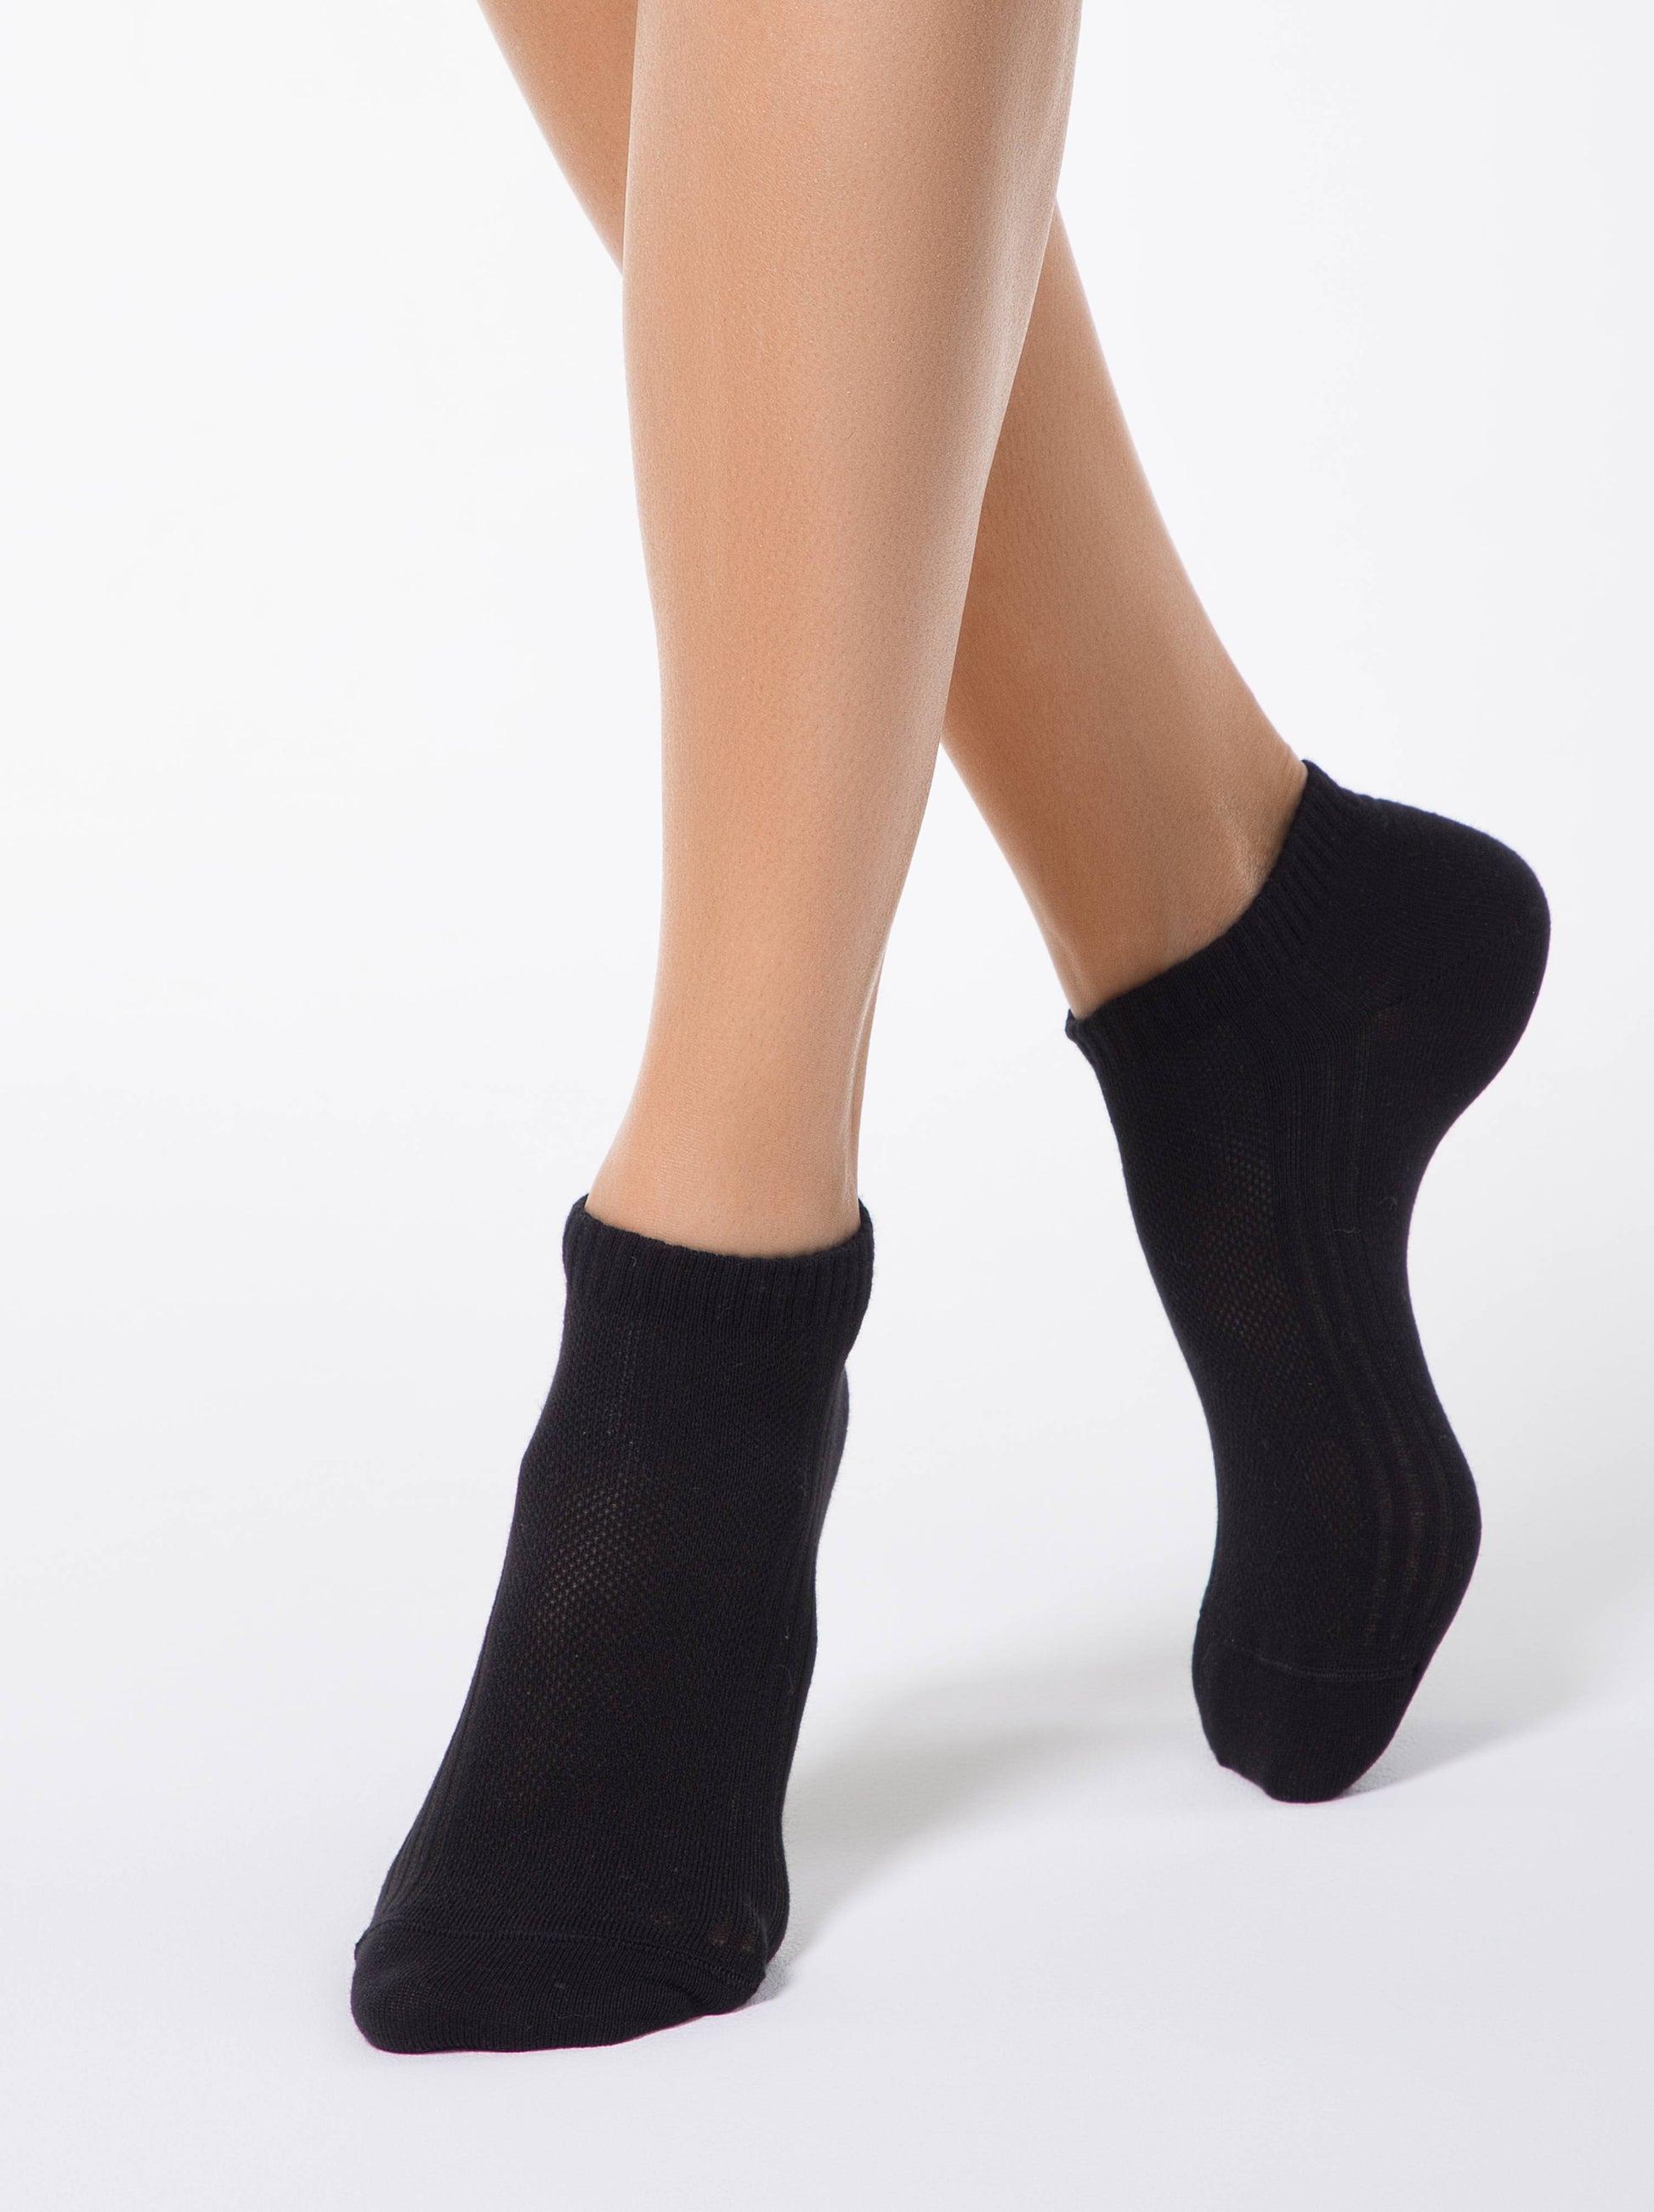 Sneaker Socken dünn und atmungsaktiv für Damen in weiß und schwarz - Luzy